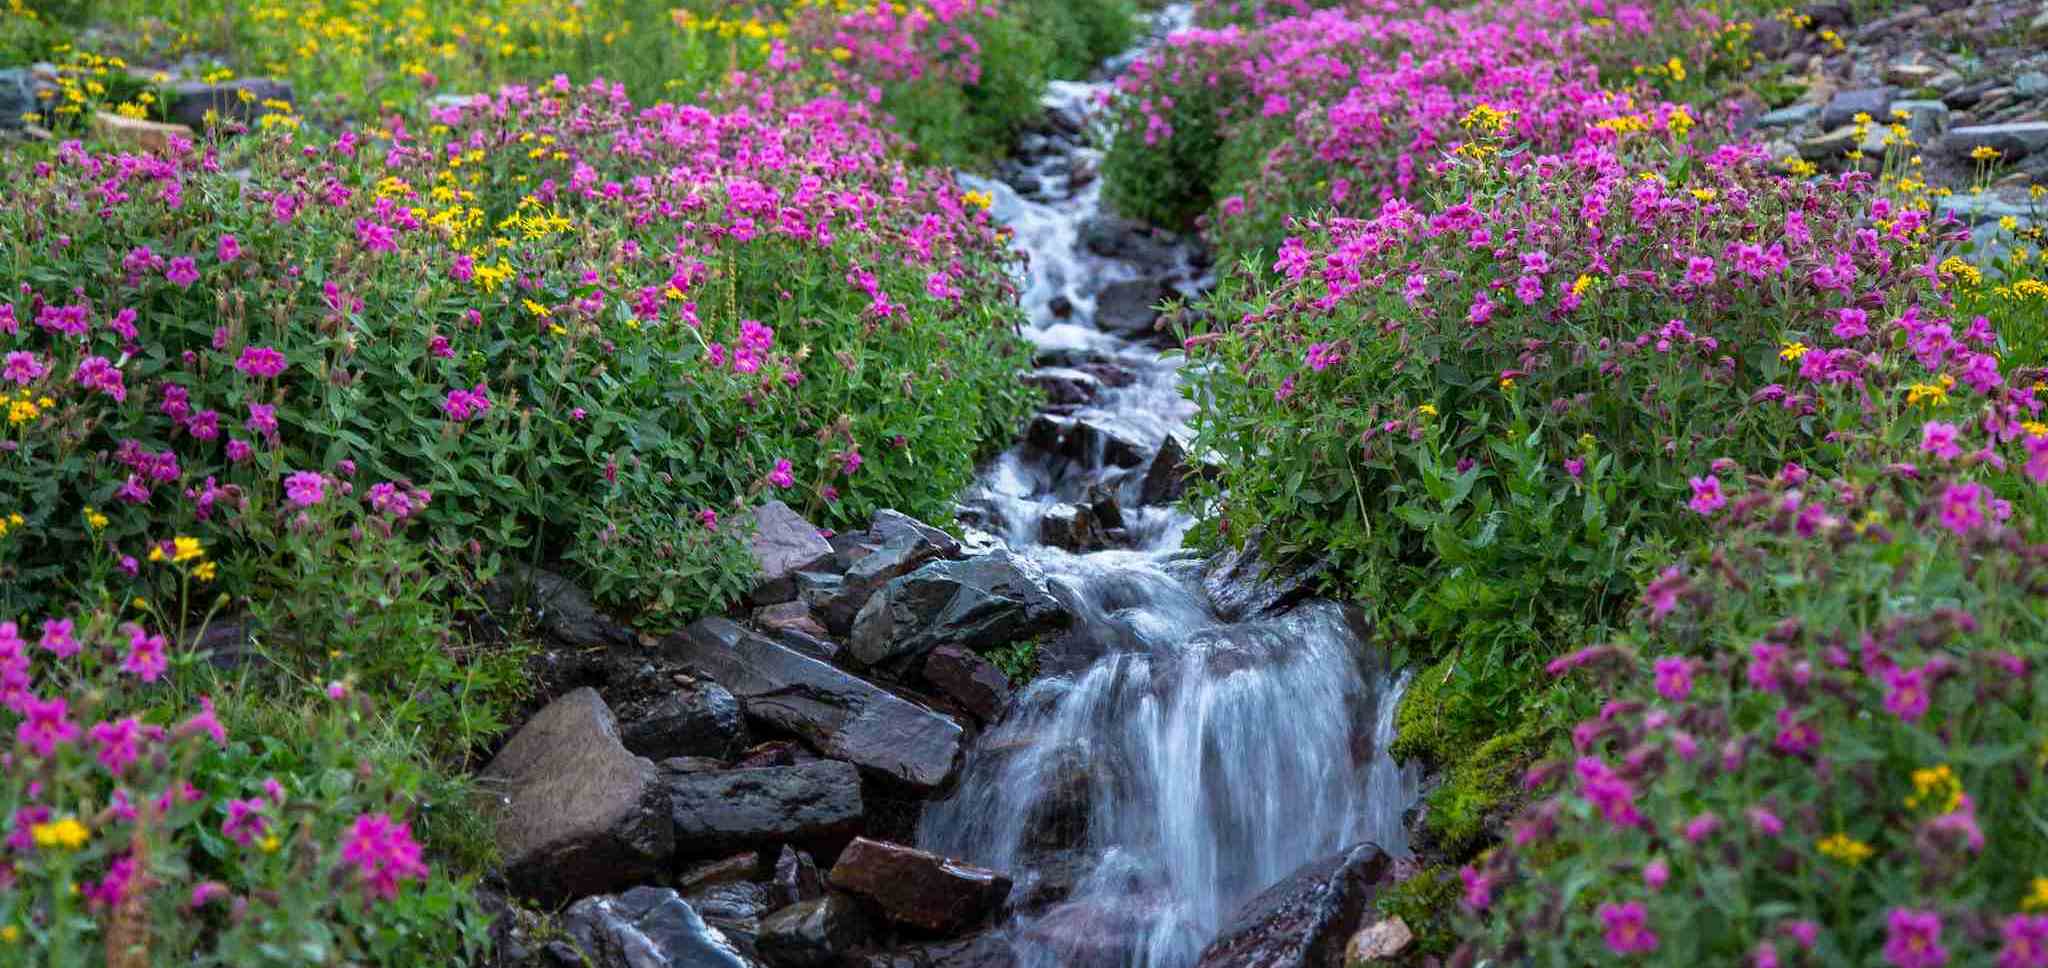 Purple flowers surround a small stream in Glacier Park